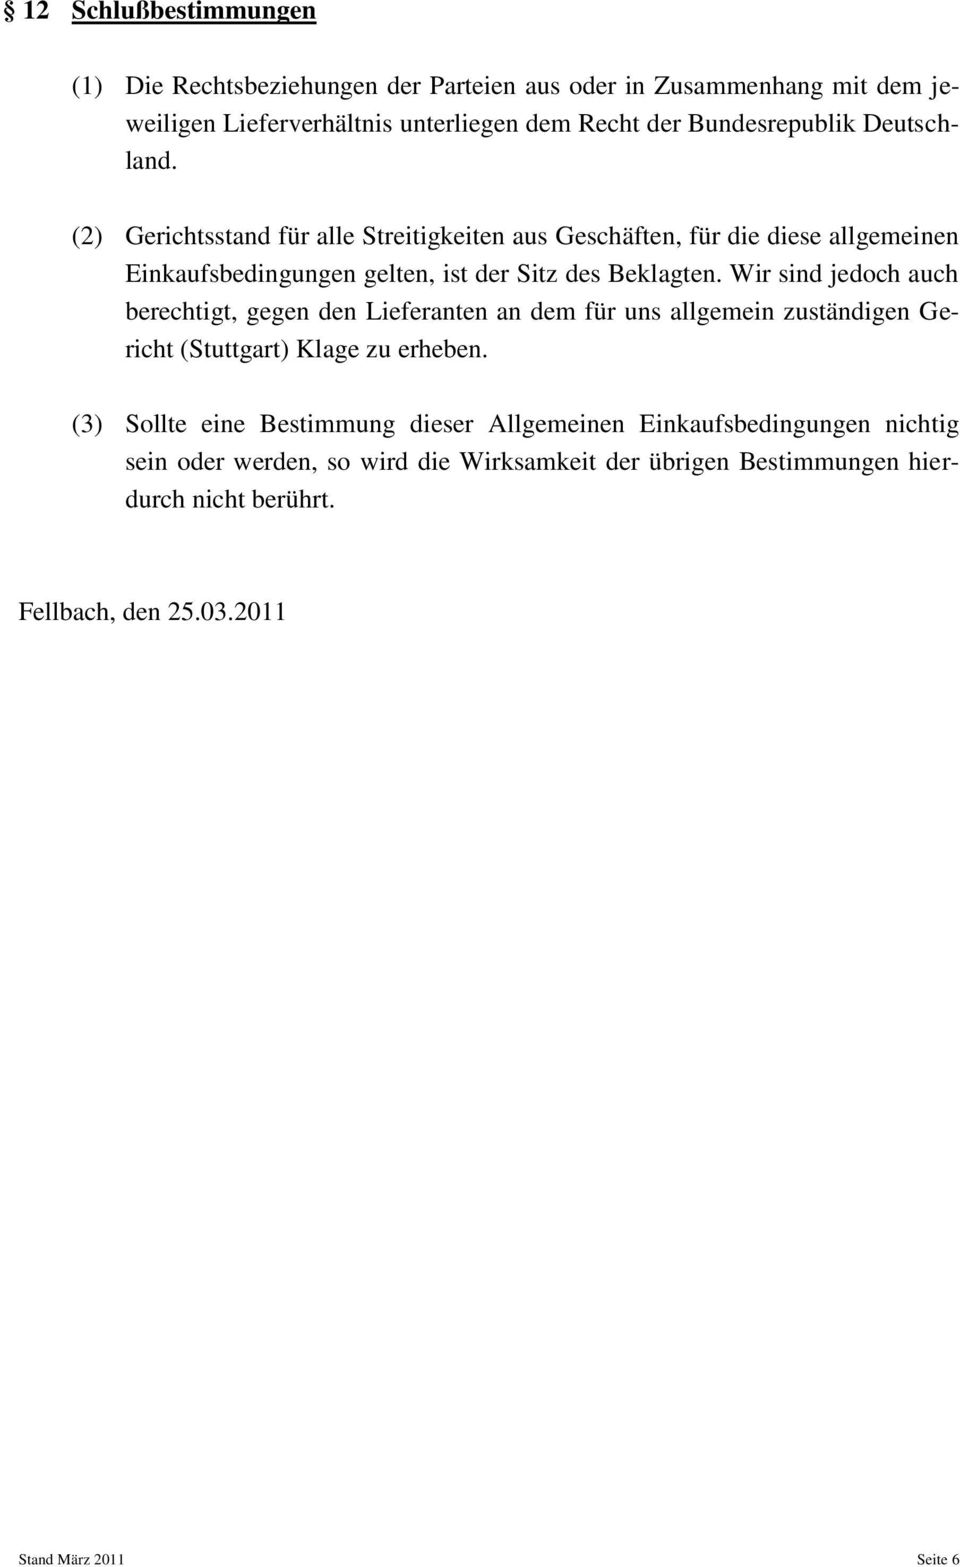 Wir sind jedoch auch berechtigt, gegen den Lieferanten an dem für uns allgemein zuständigen Gericht (Stuttgart) Klage zu erheben.